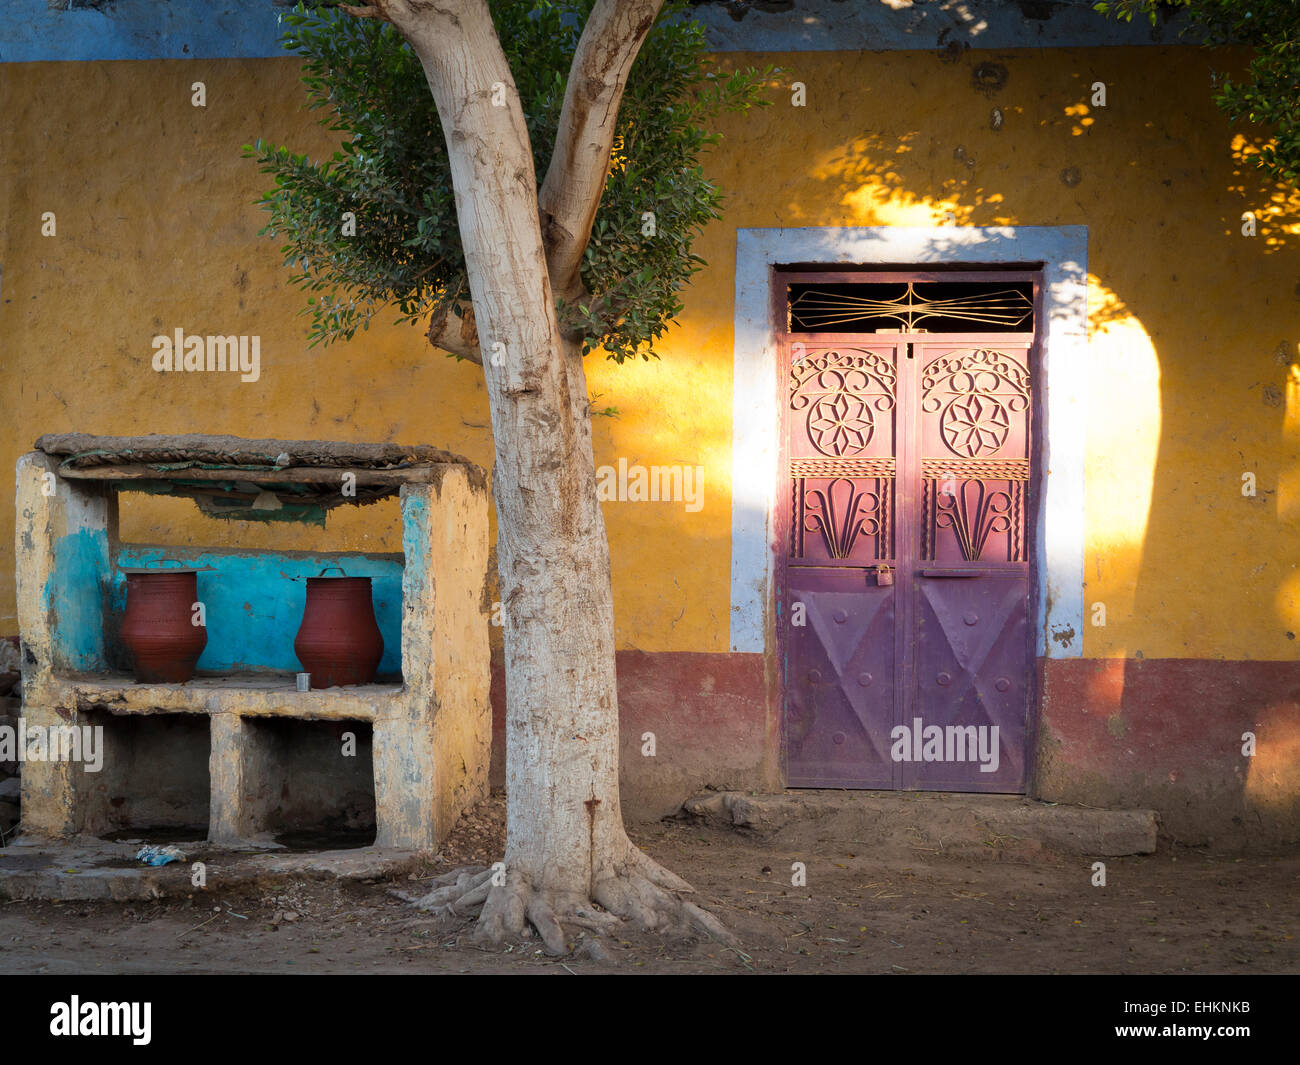 La poterie de l'eau potable publique 2 transporteurs sur la route, sous un arbre en face de maison jaune et porte métallique Egypte Afrique Banque D'Images